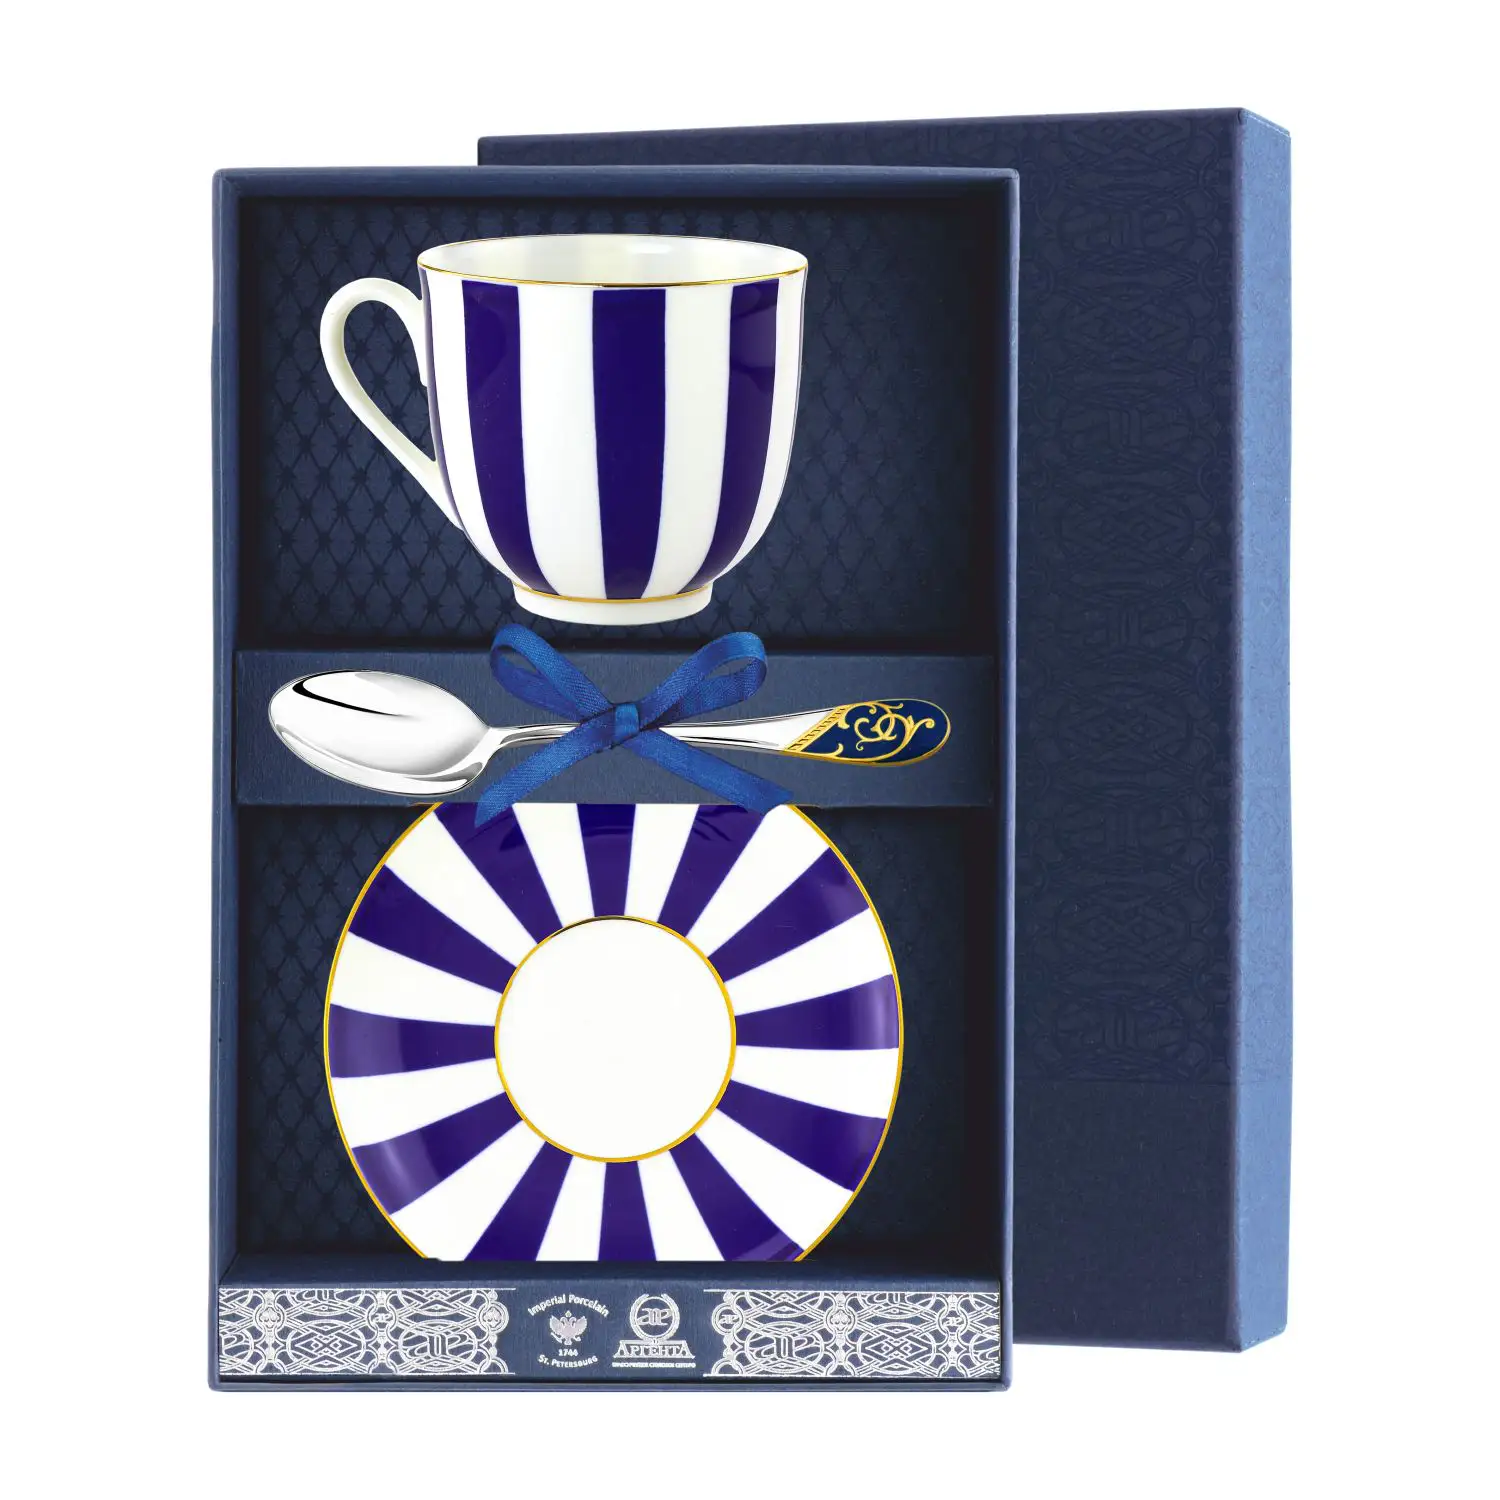 Набор чайный Ландыш - Да и Нет: блюдце, ложка, чашка, фарфор (Серебро 925) набор чайный ландыш фигурное катание блюдце ложка чашка серебро 925